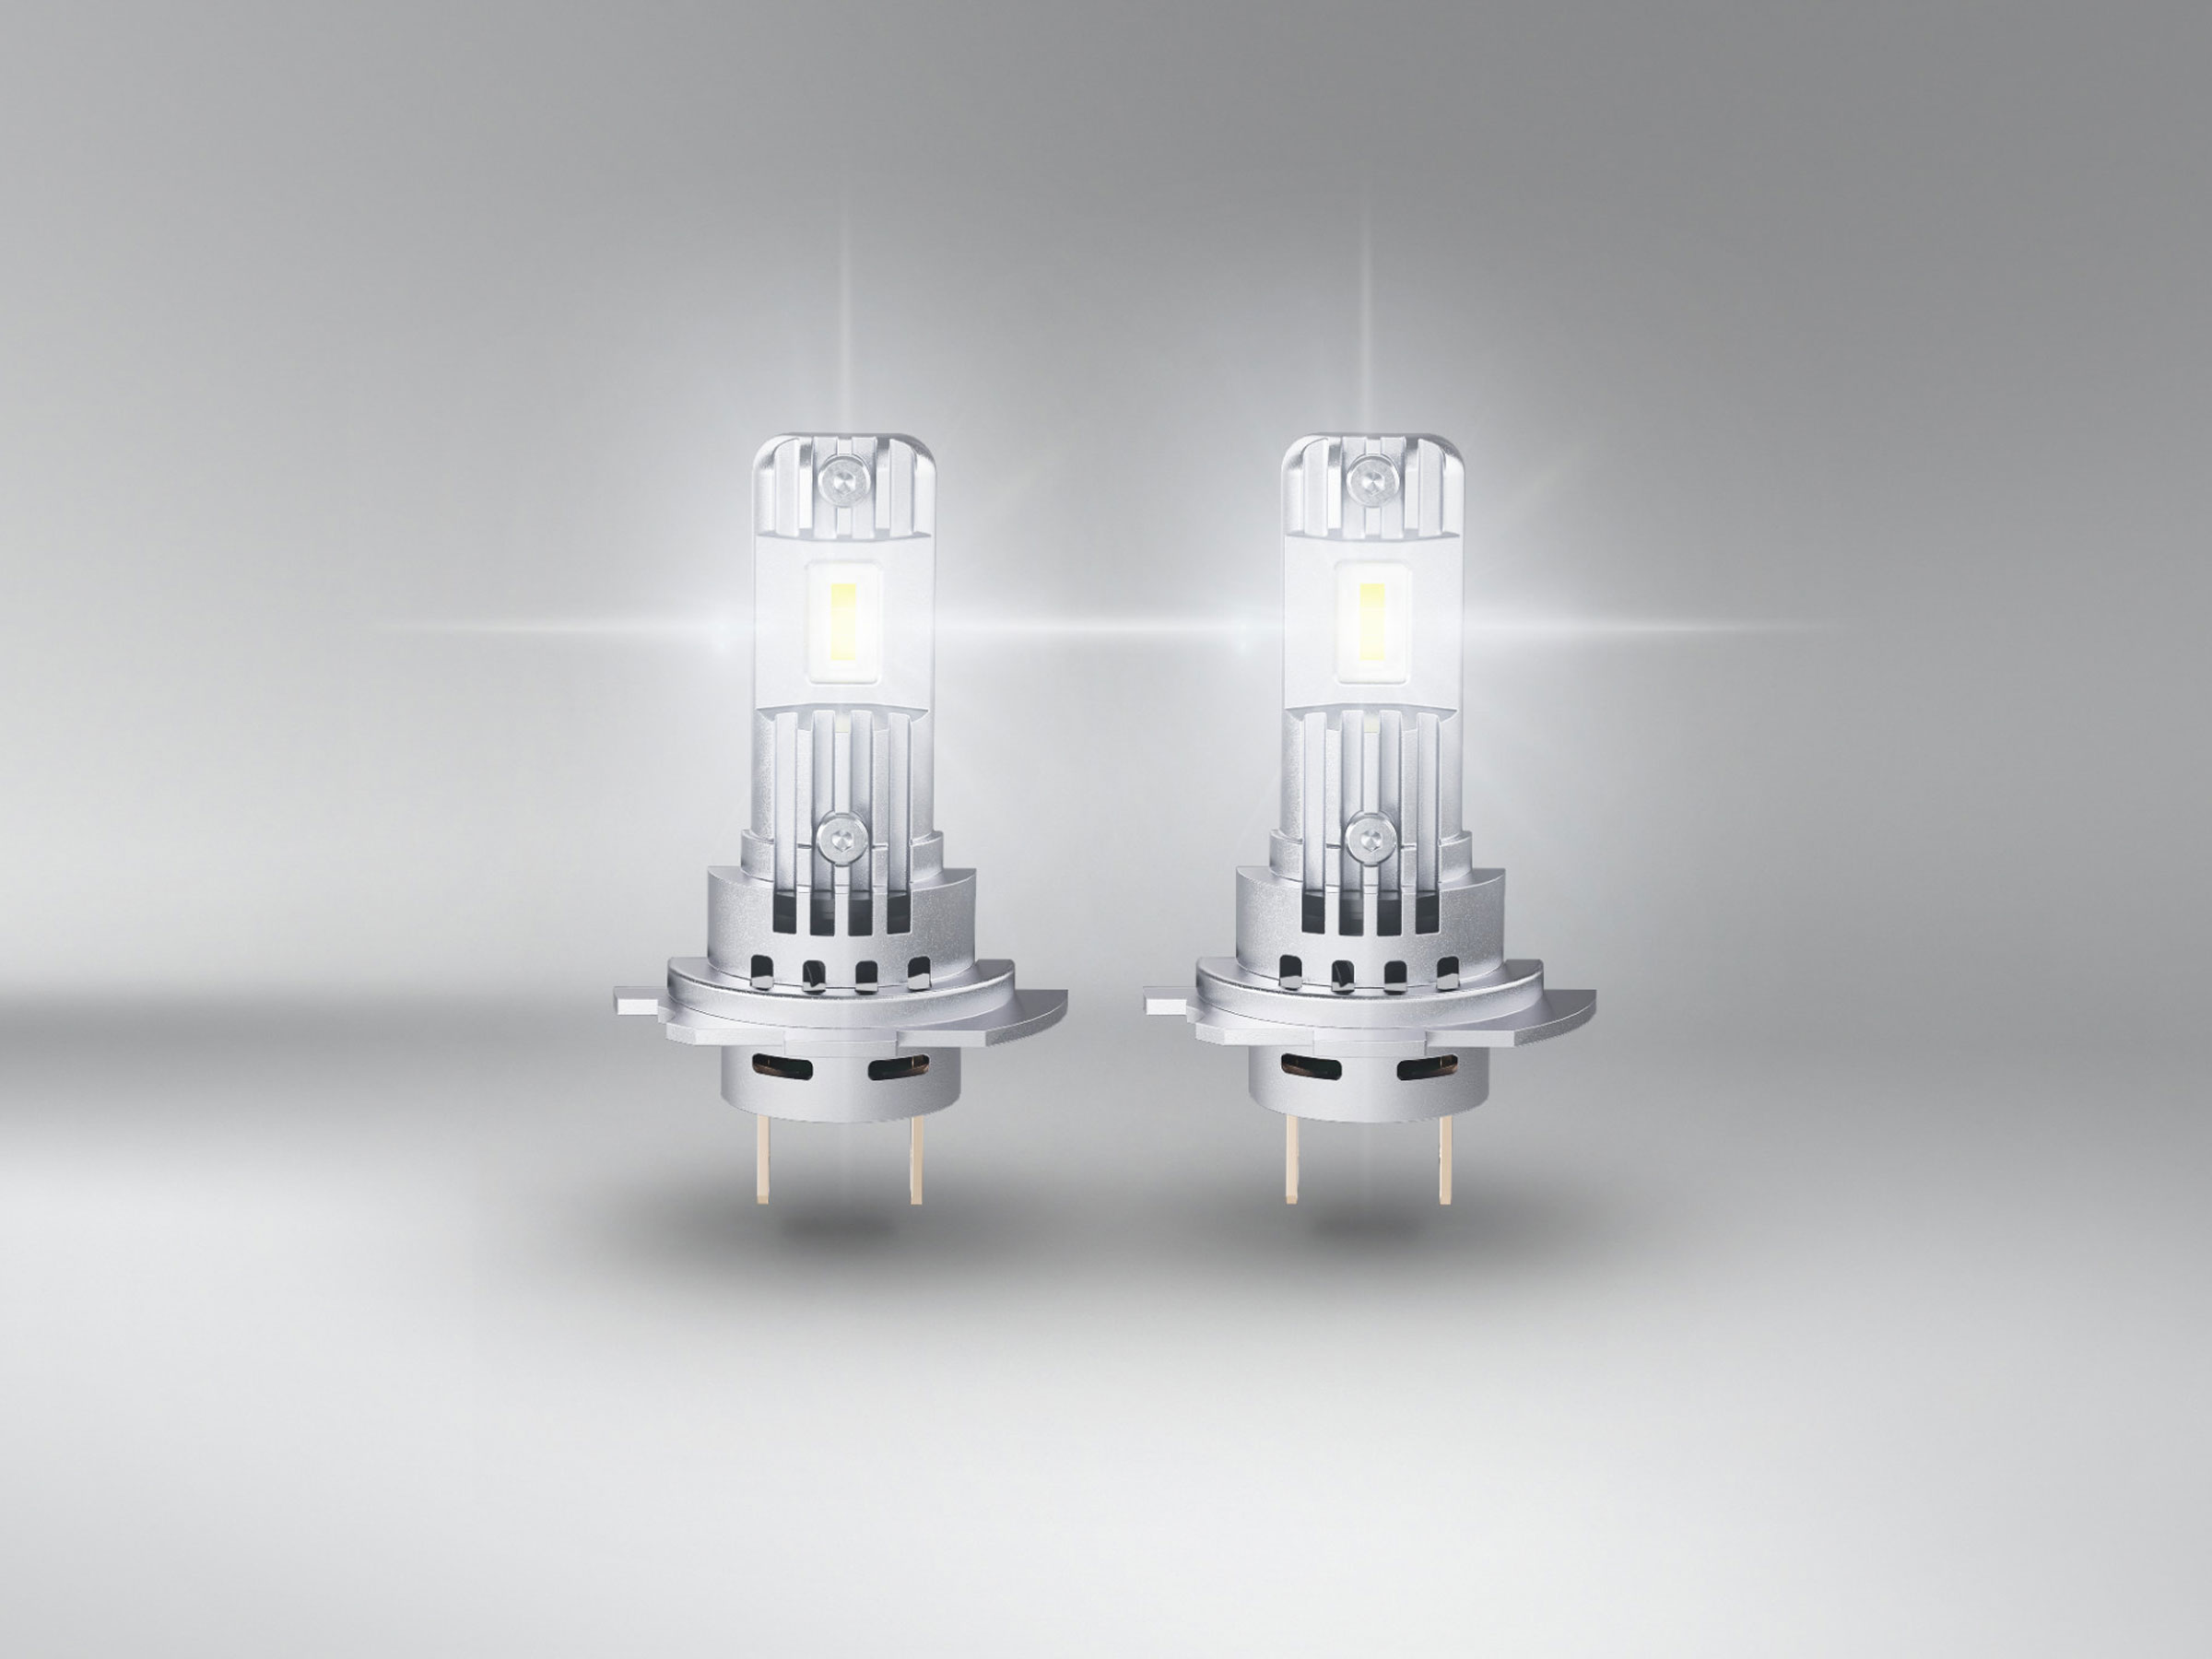 OSRAM LEDriving LED Abblendlicht EASY H7 / H18 12V 16.2W PX26d